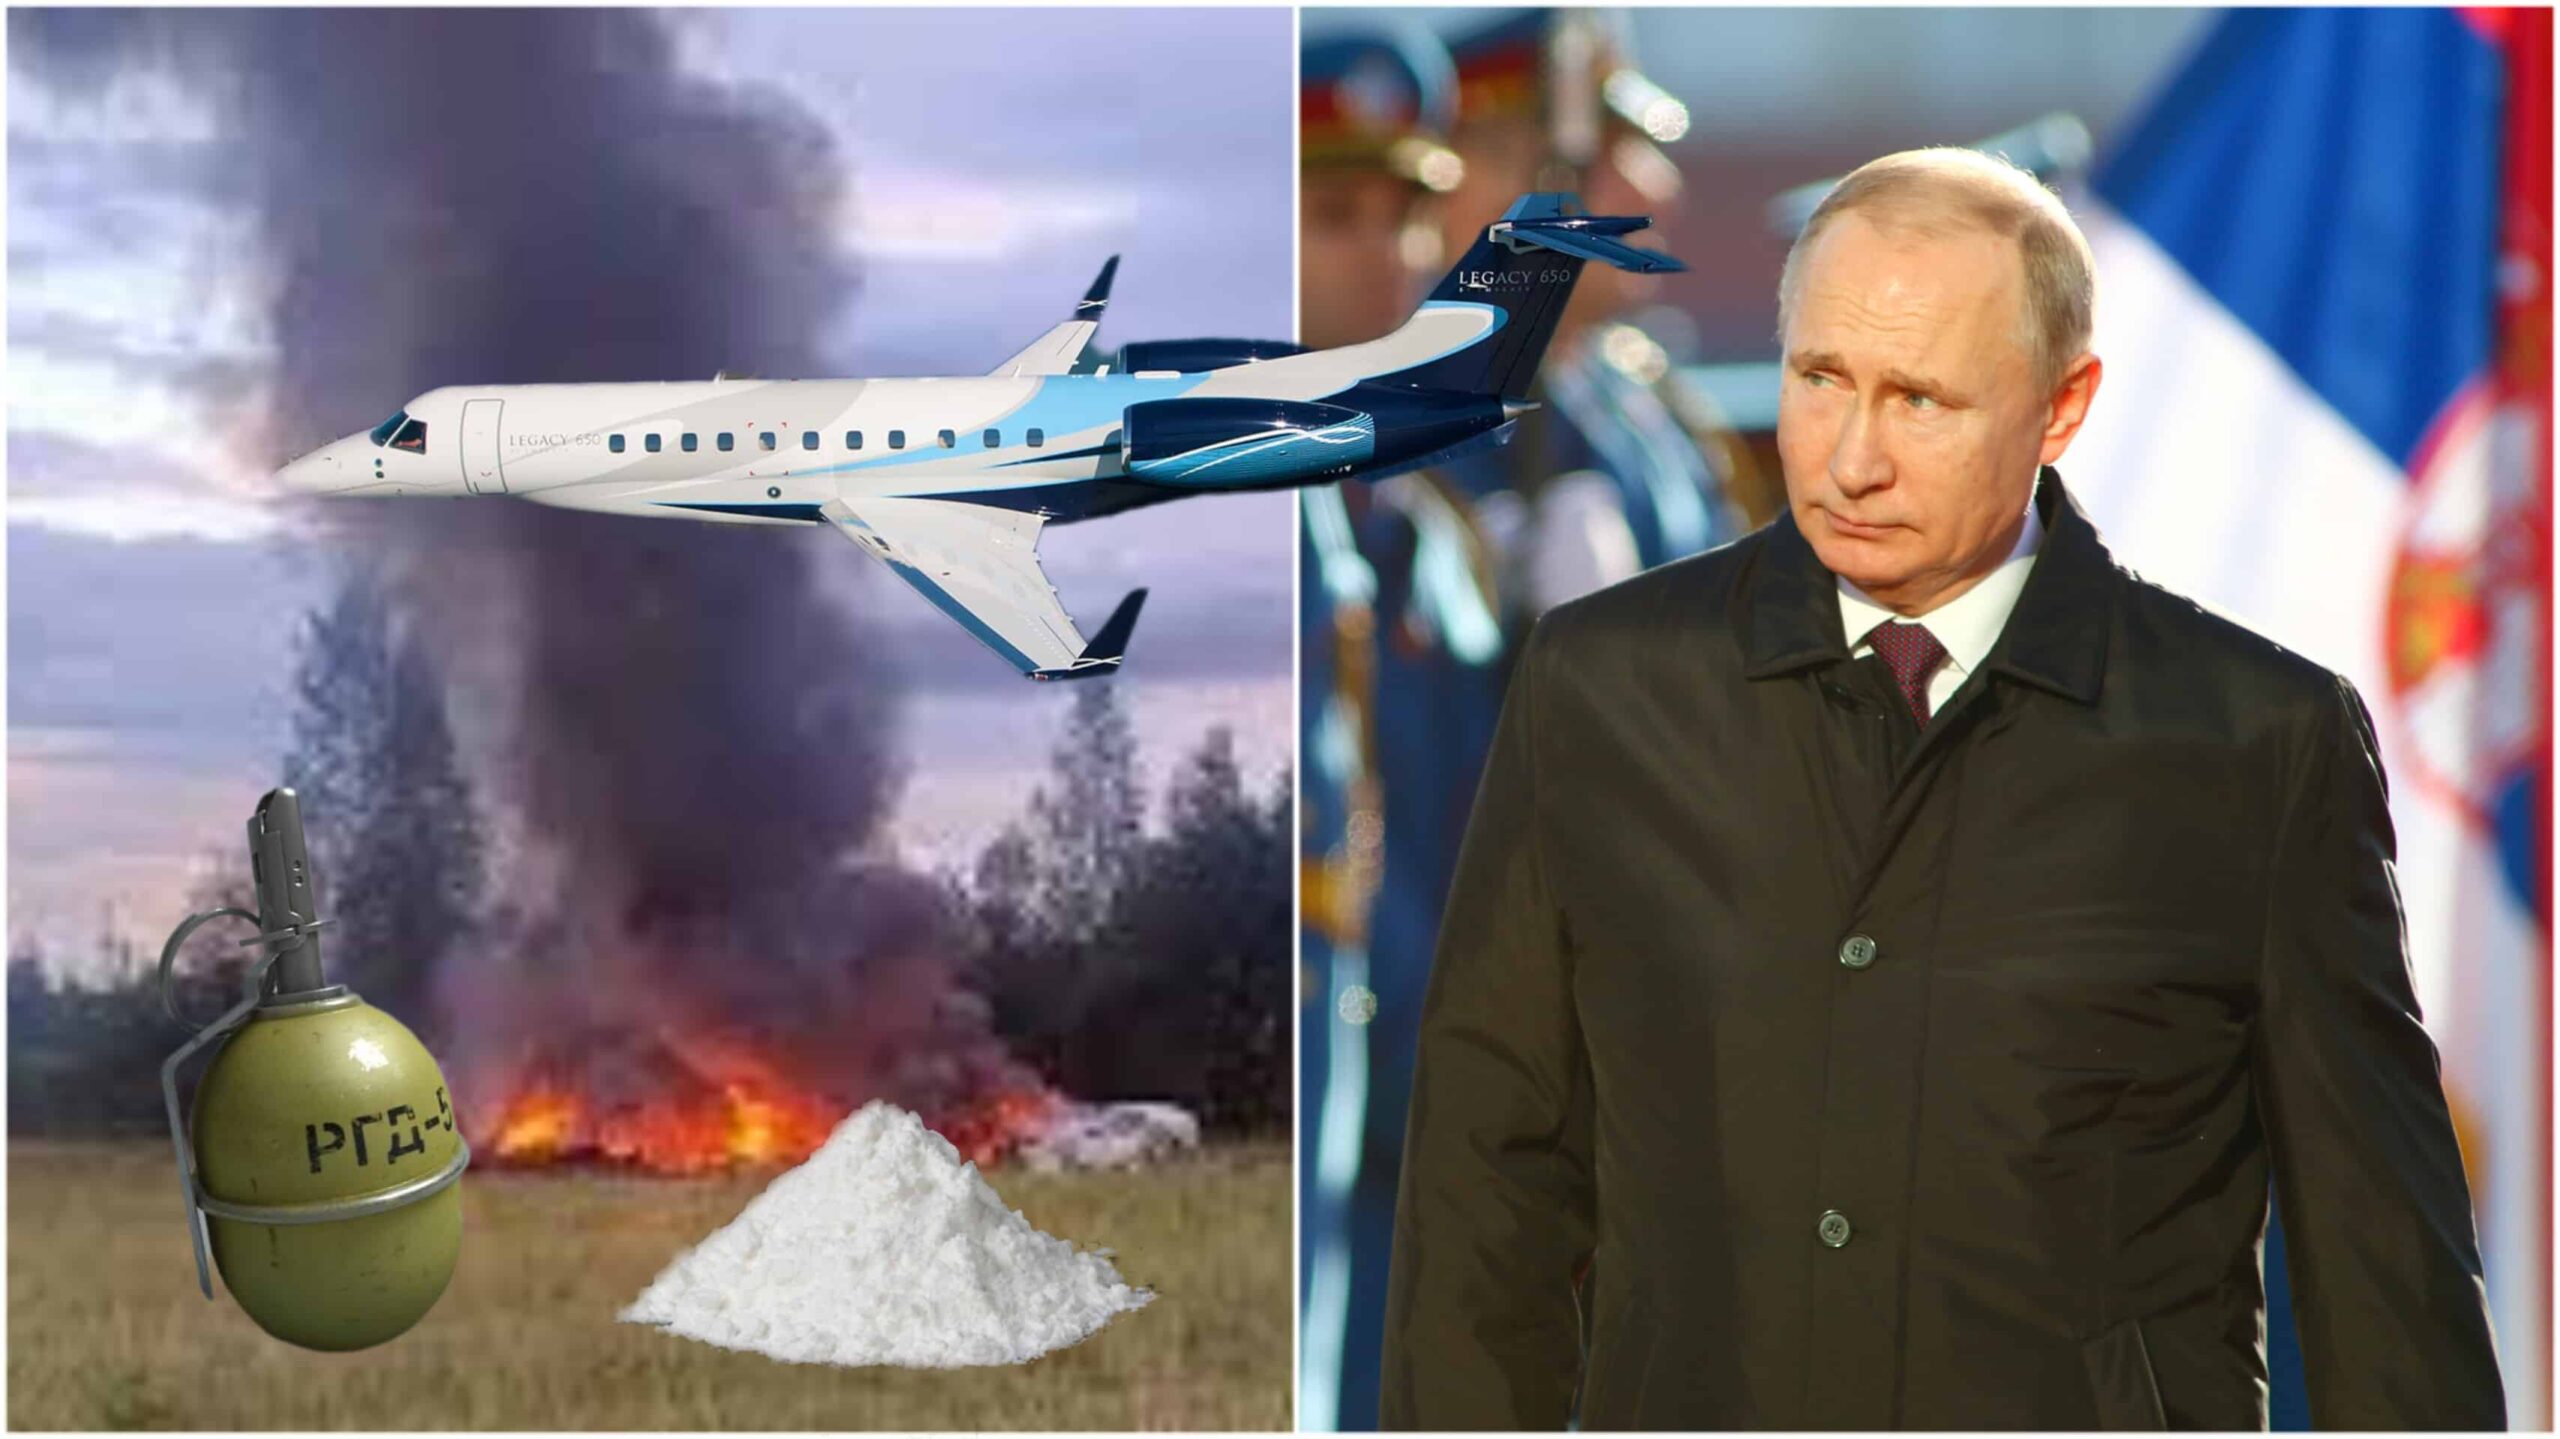 Putin säger att kokain, granater orsakade dödlig flygkrasch av fienden, inte mord